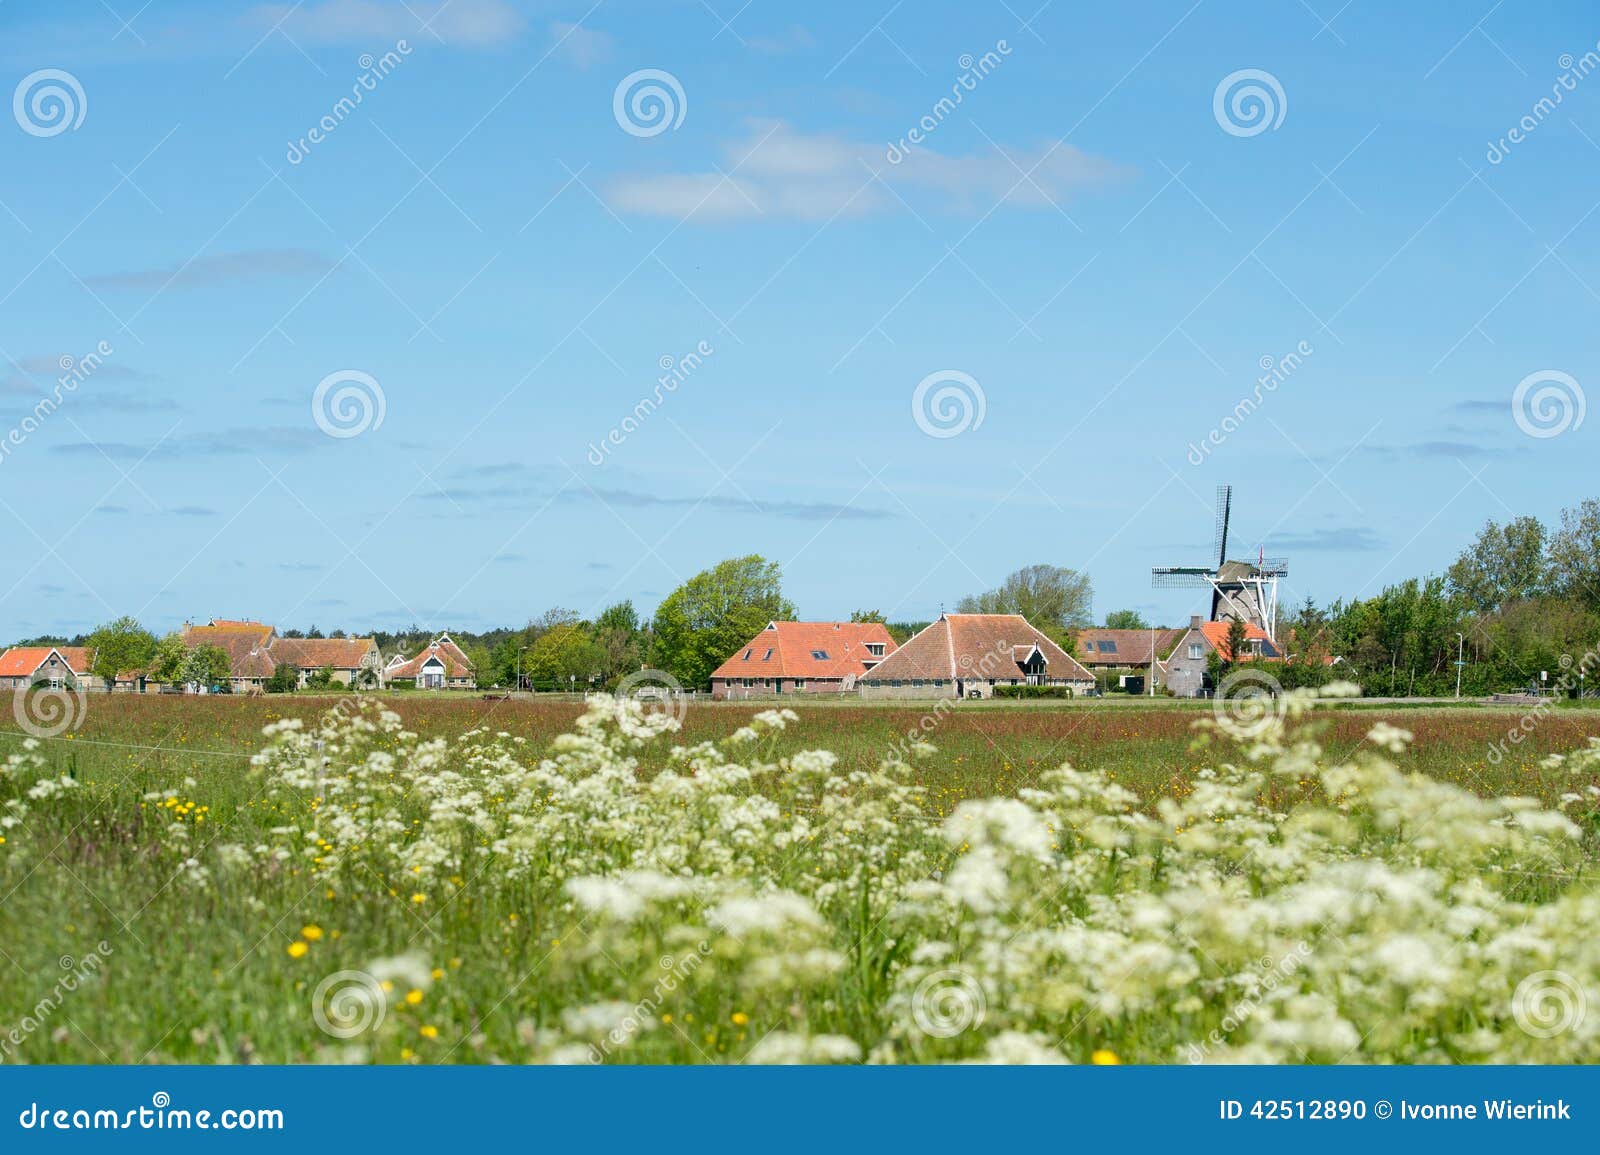 dutch village at terschelling